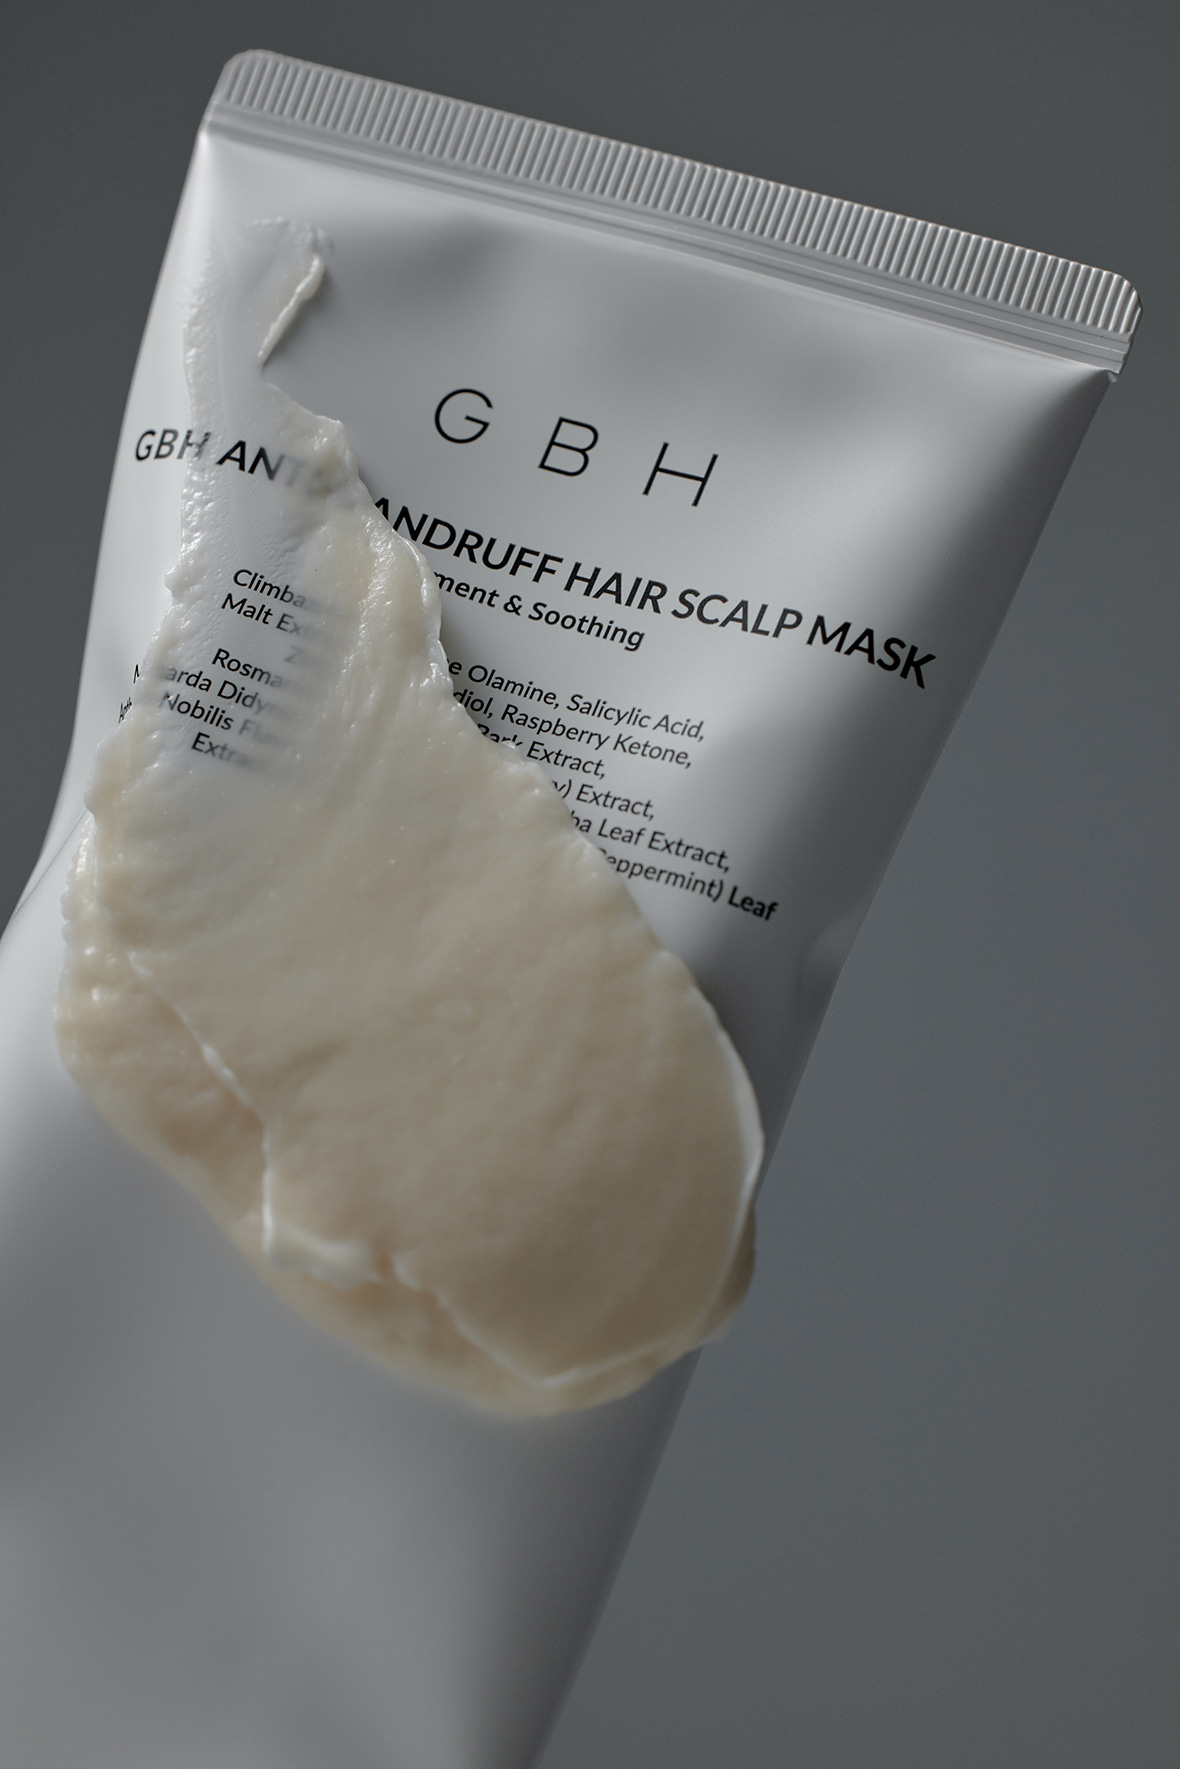 GBH Anti-Dandruff Hair Scalp Mask